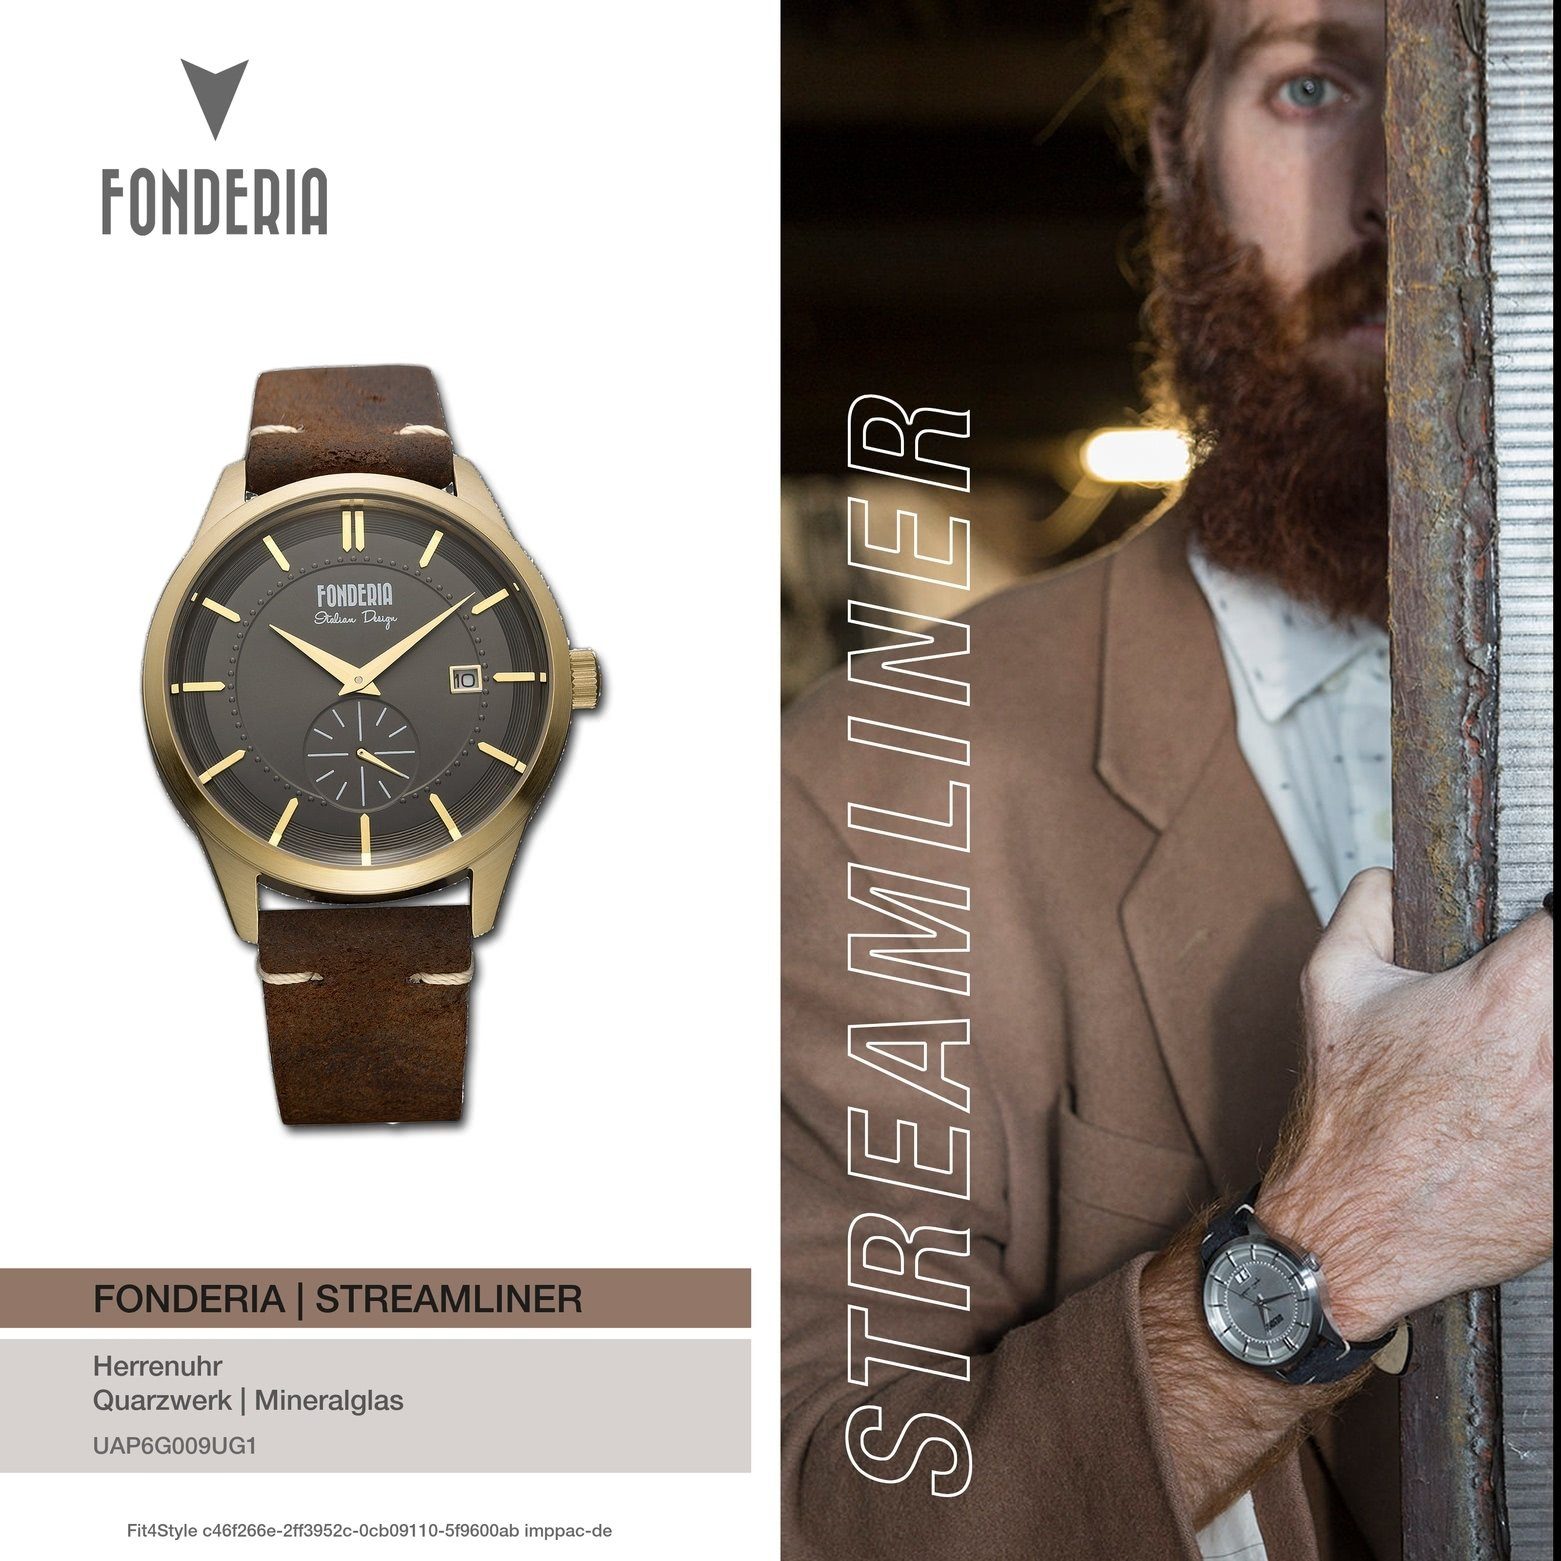 Fonderia Quarzuhr Fonderia Herren Uhr Armbanduhr braun 41mm), rund, P-6G009UG1 Herren Lederarmband Leder, groß (ca